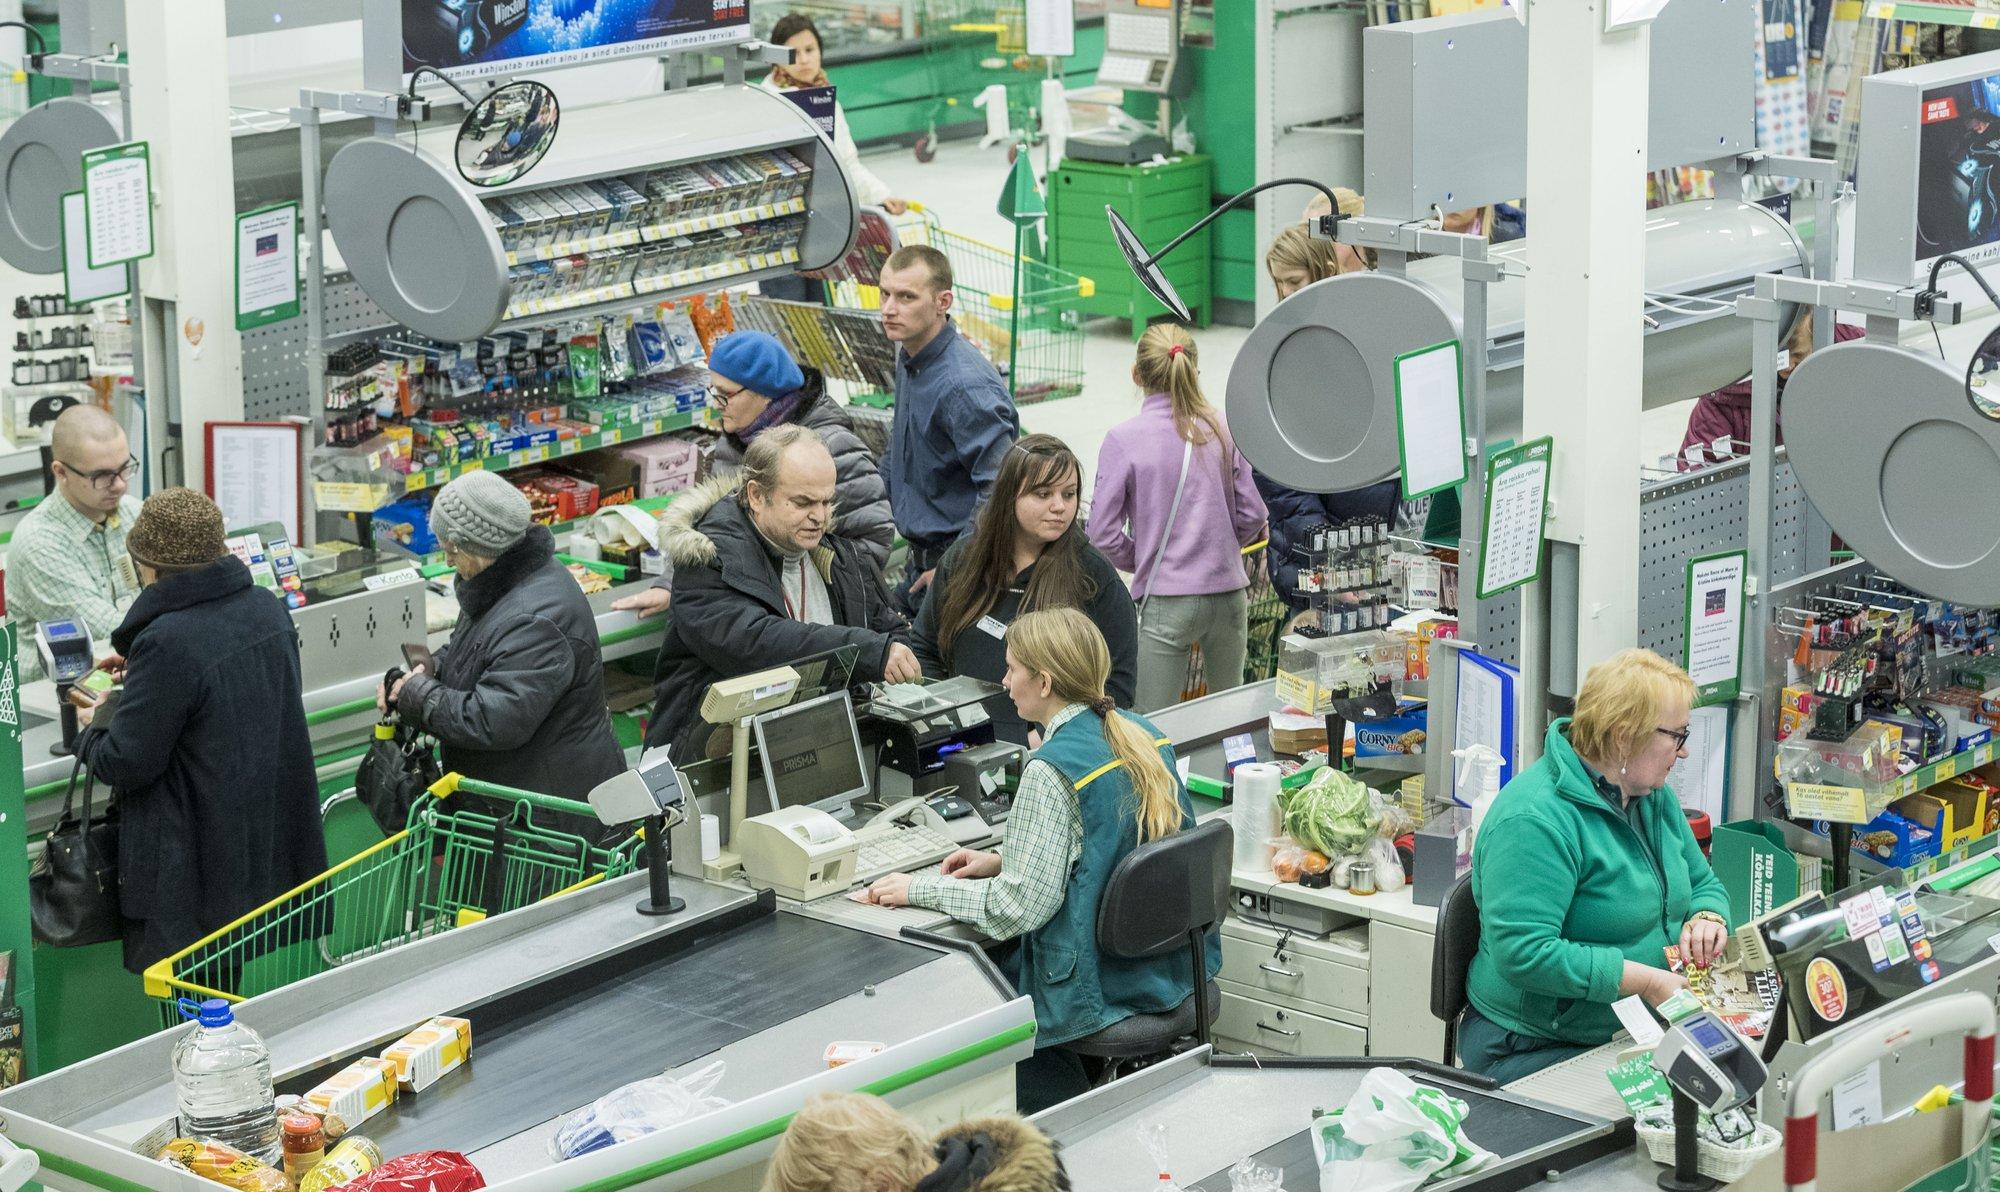 Из-за языкового барьера между покупателем и работником магазина вспыхнул жаркий спор. Оказывается, это очень частая проблема в Эстонии